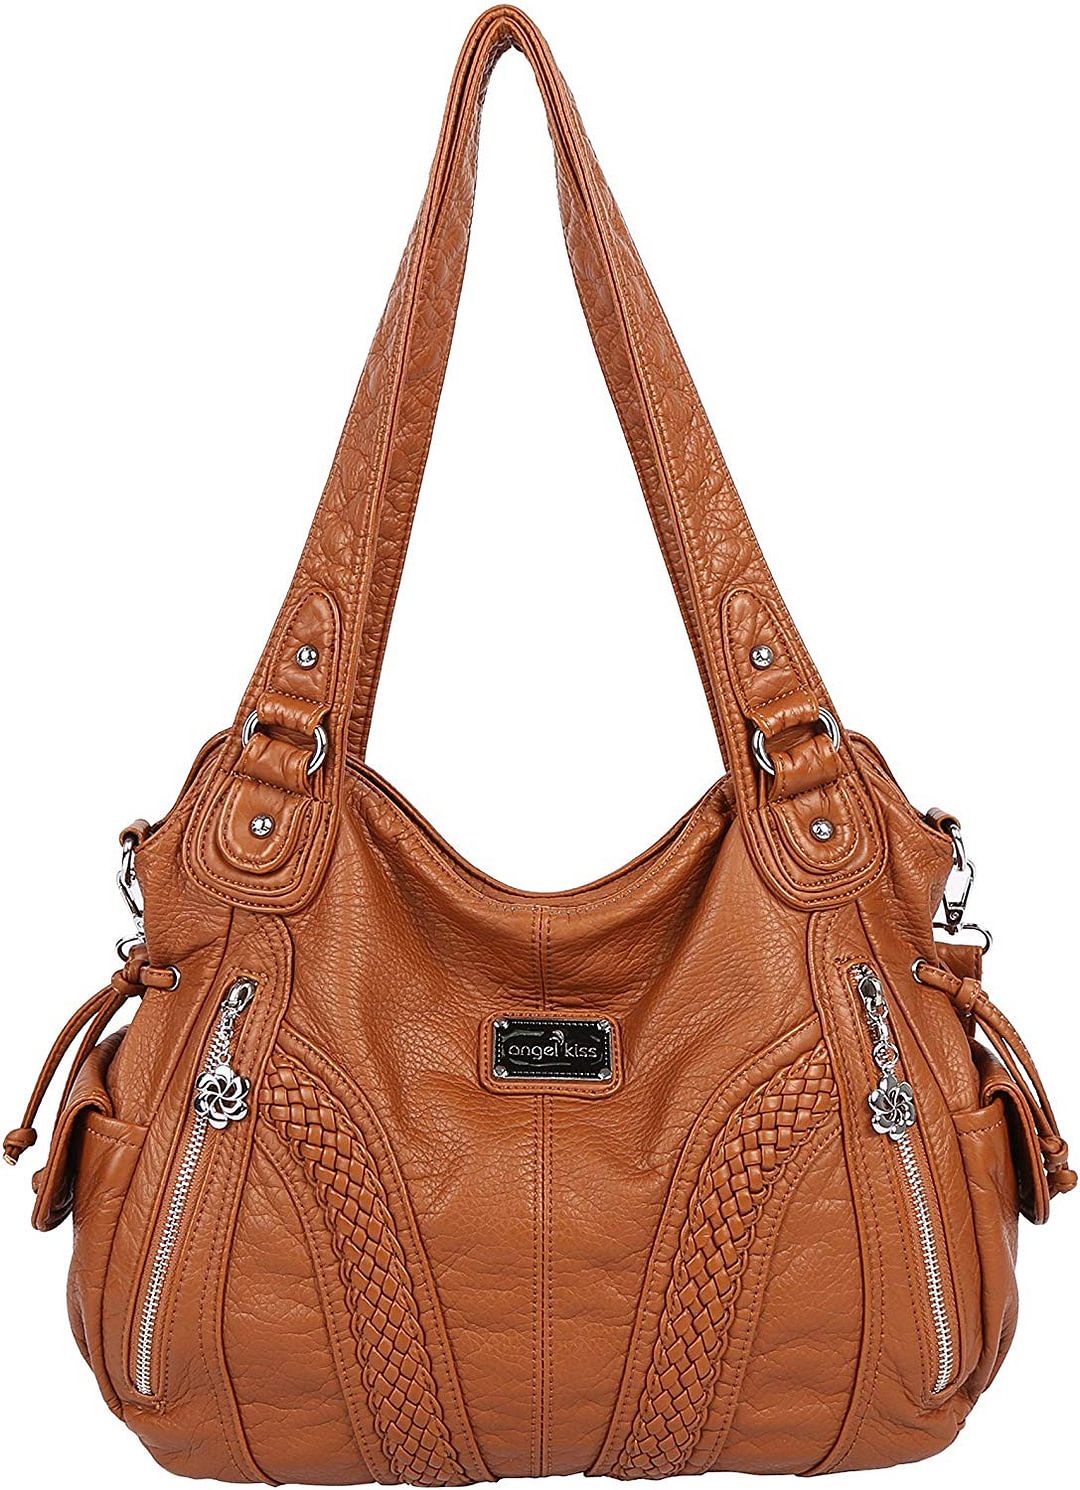 Women Top Handle Satchel Handbags Shoulder Bag Messenger Tote Washed Leather Purses Bag …